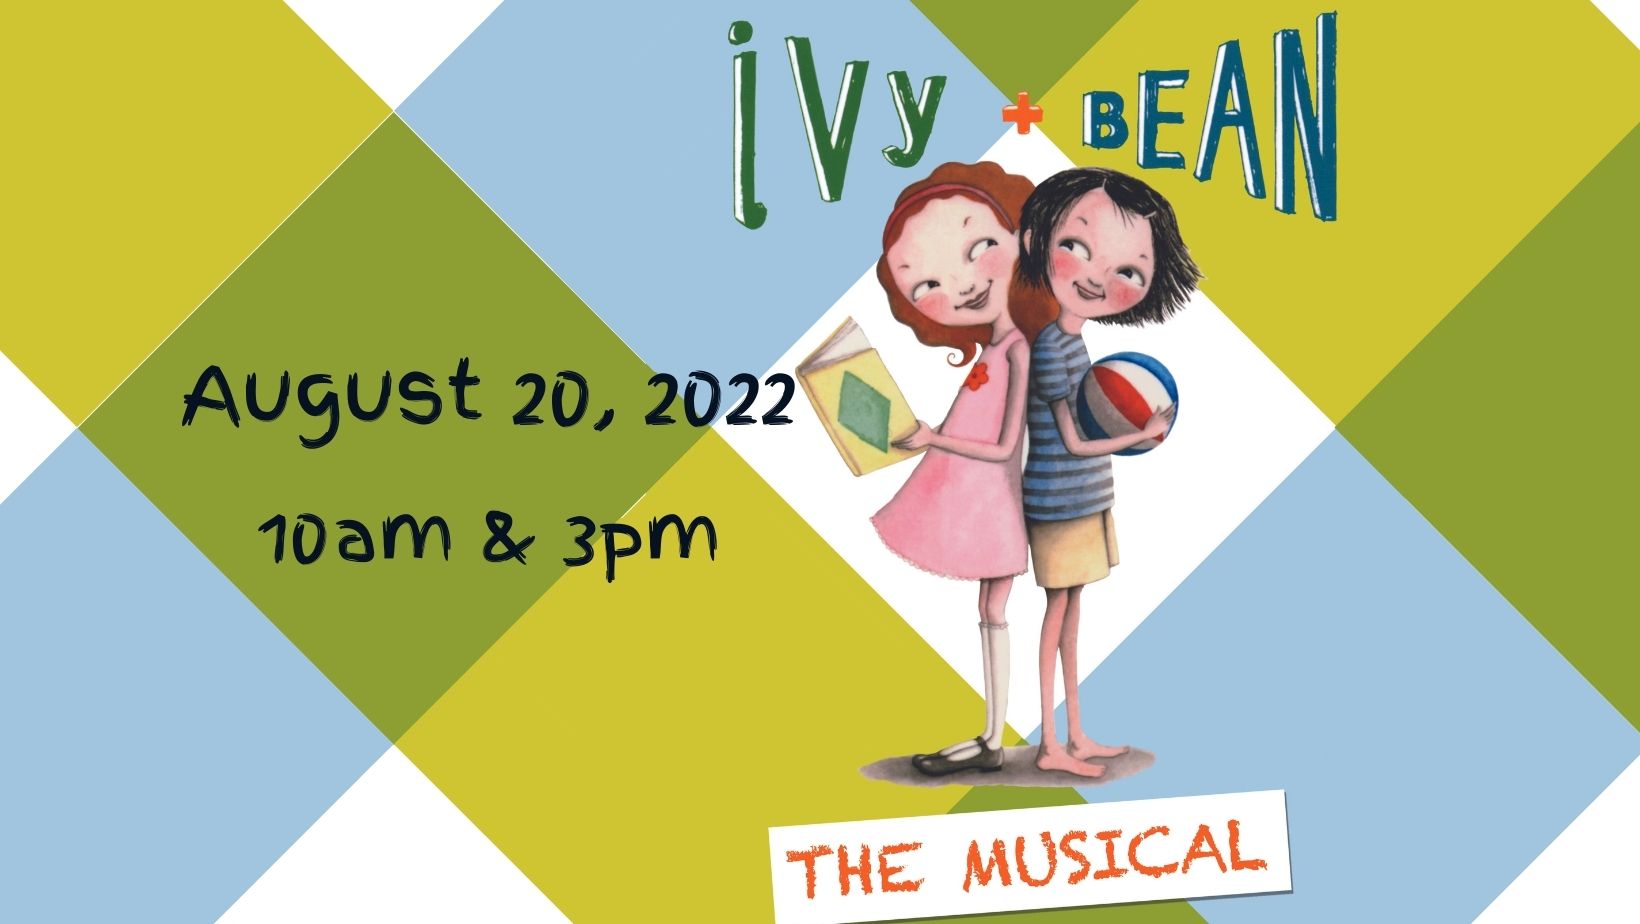 Ivy + Bean The Musical